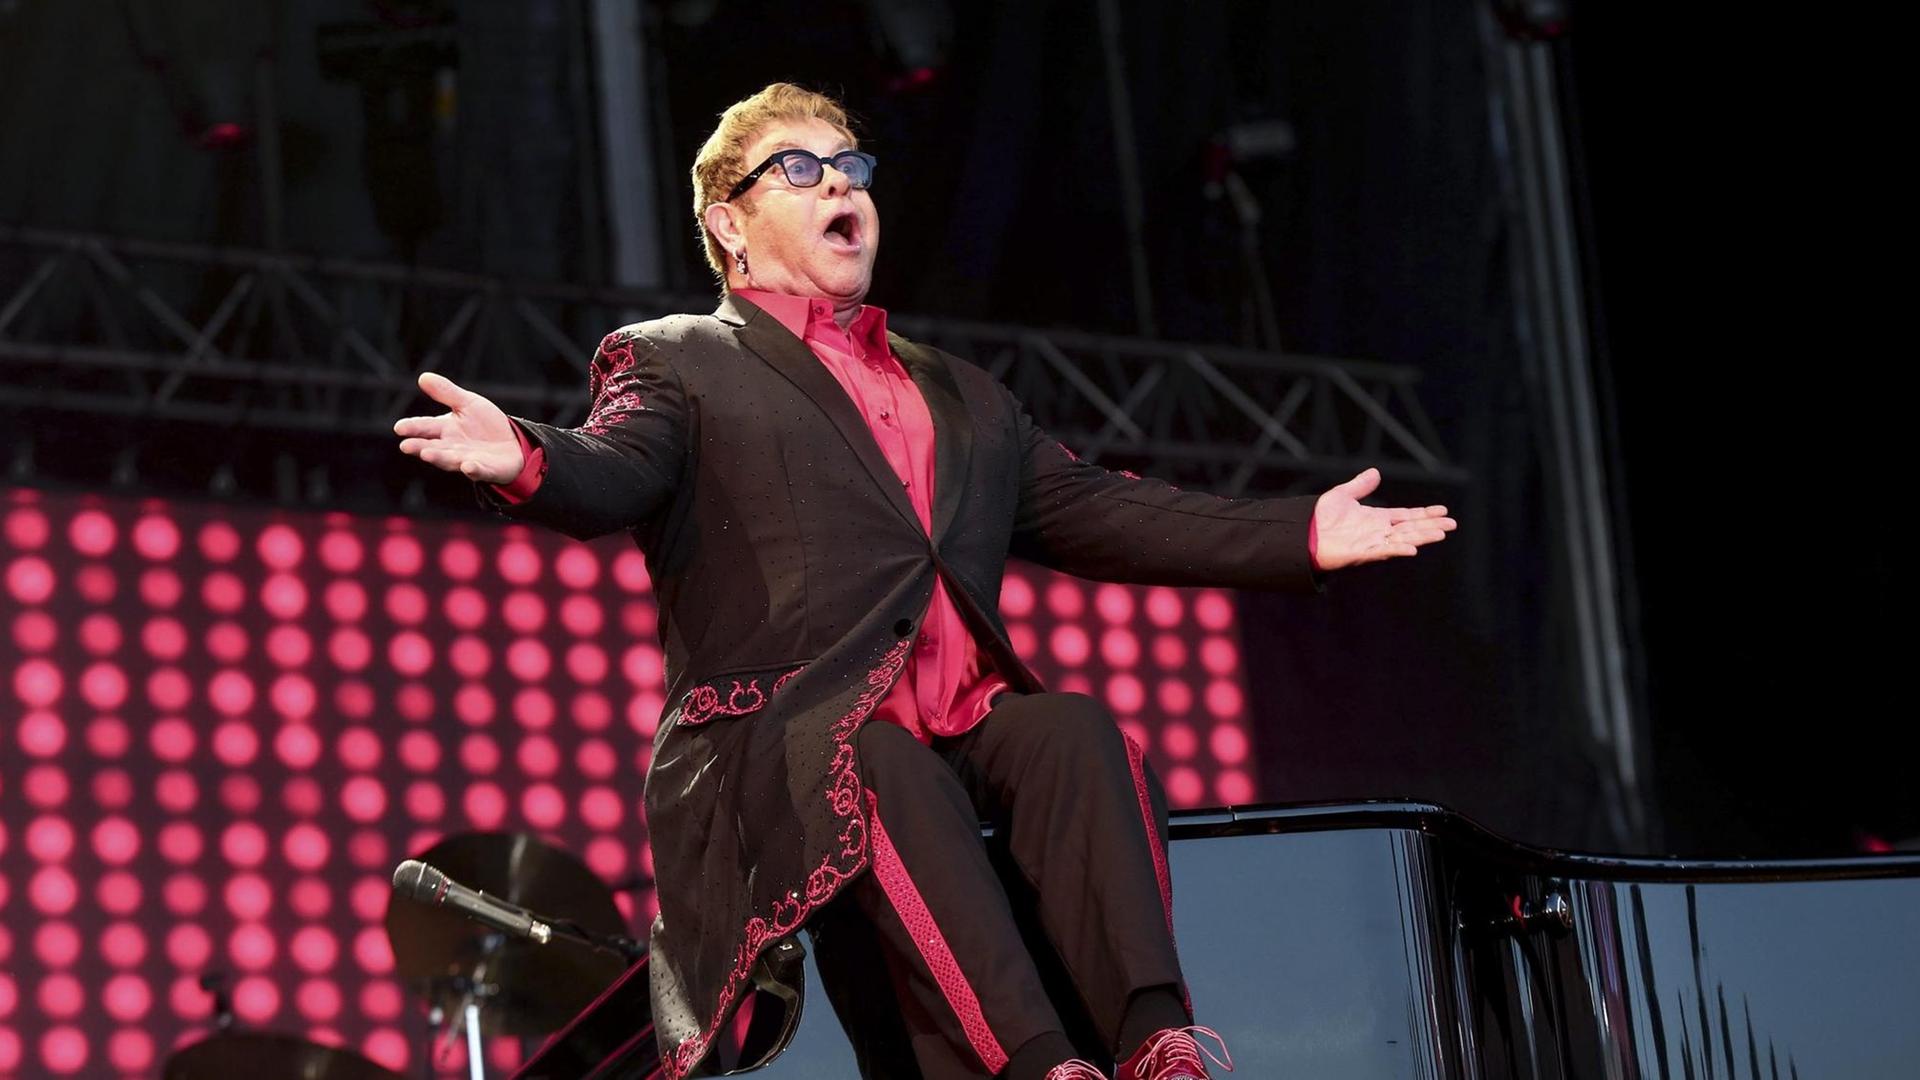 Der britische Popsänger Sir Elton John tritt am 14.07.2016 auf dem MEO Mares Vivas Musik Festival in Vila Nova de Gaia, Portugal auf. Am 25. März 2017 wird er 70 Jahre alt.